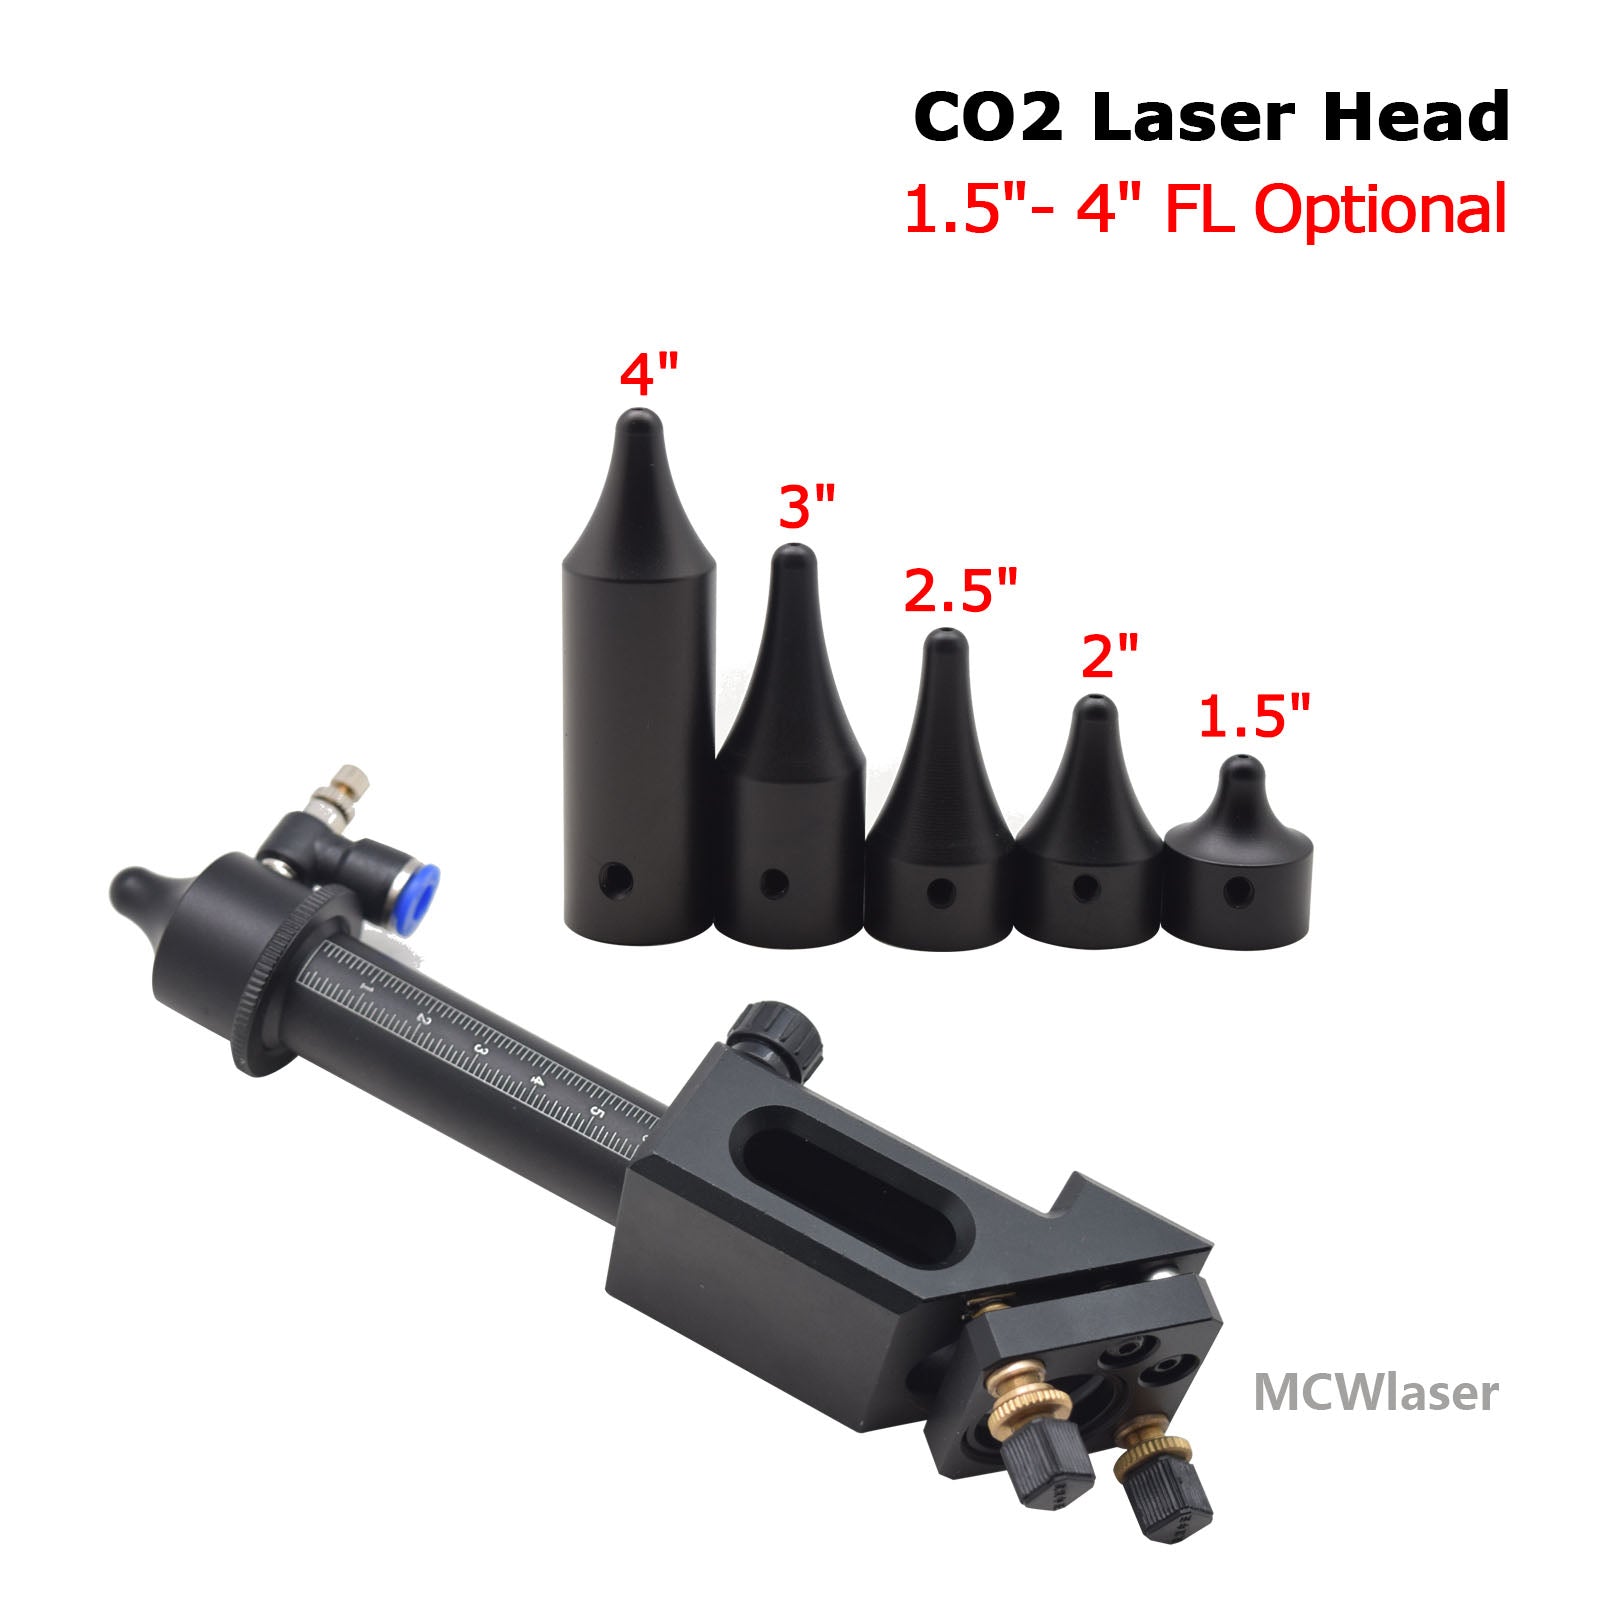 Tête laser MCWlaser pour machine de découpe laser CO2